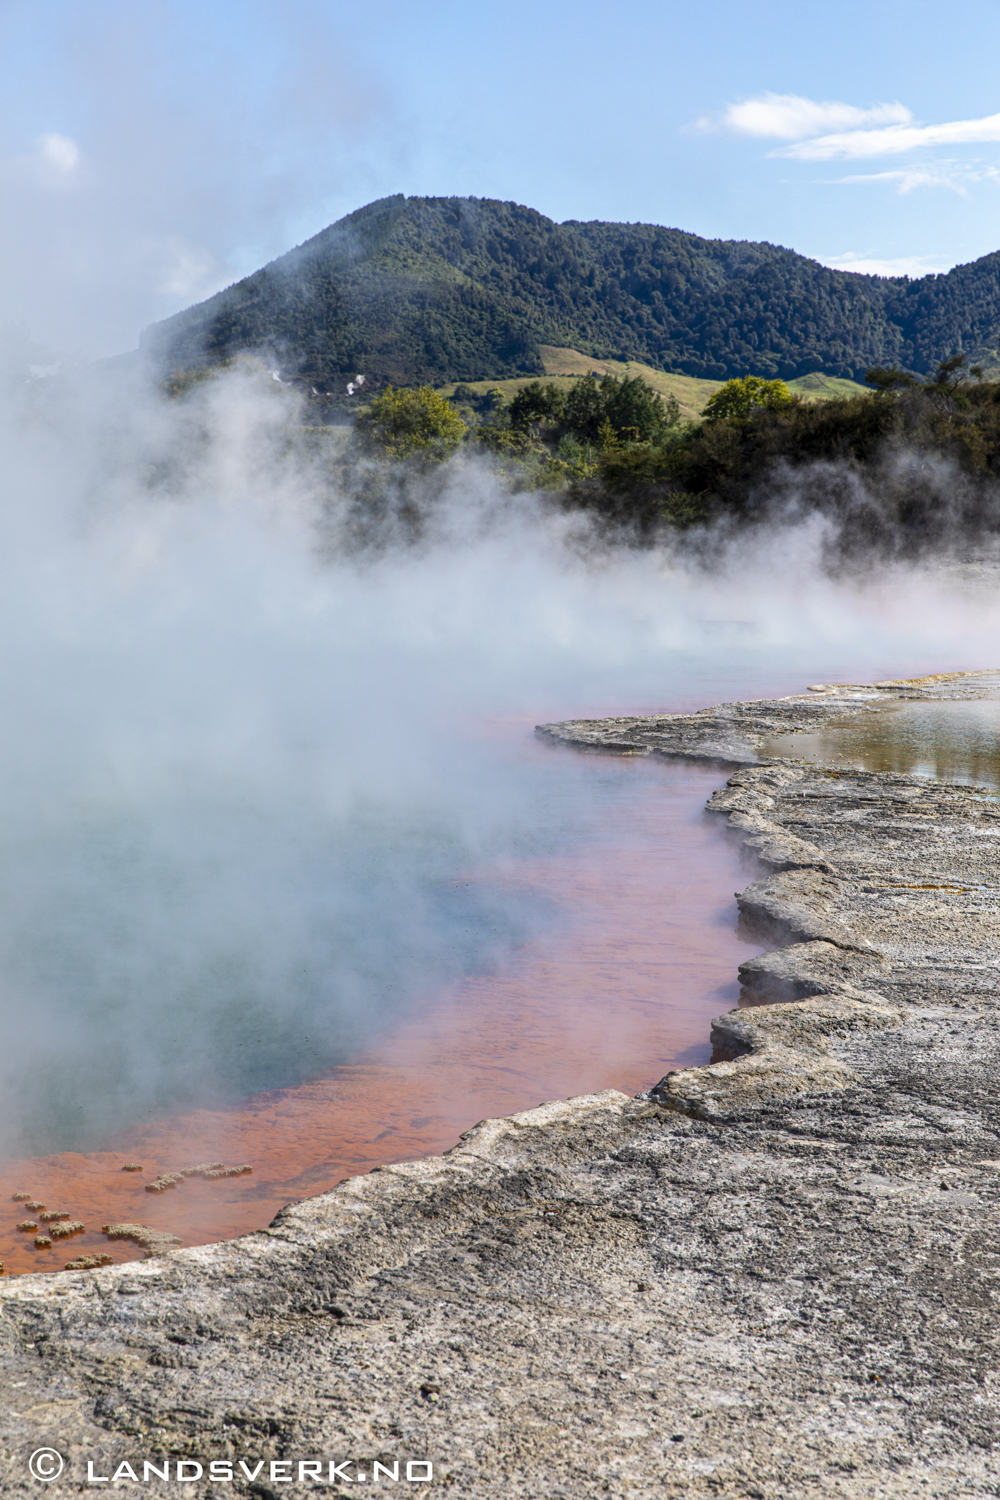 Wai-O-Tapu thermal park, Rotorua, New Zealand. 

(Canon EOS 5D Mark IV / Canon EF 24-70mm f/2.8 L II USM)